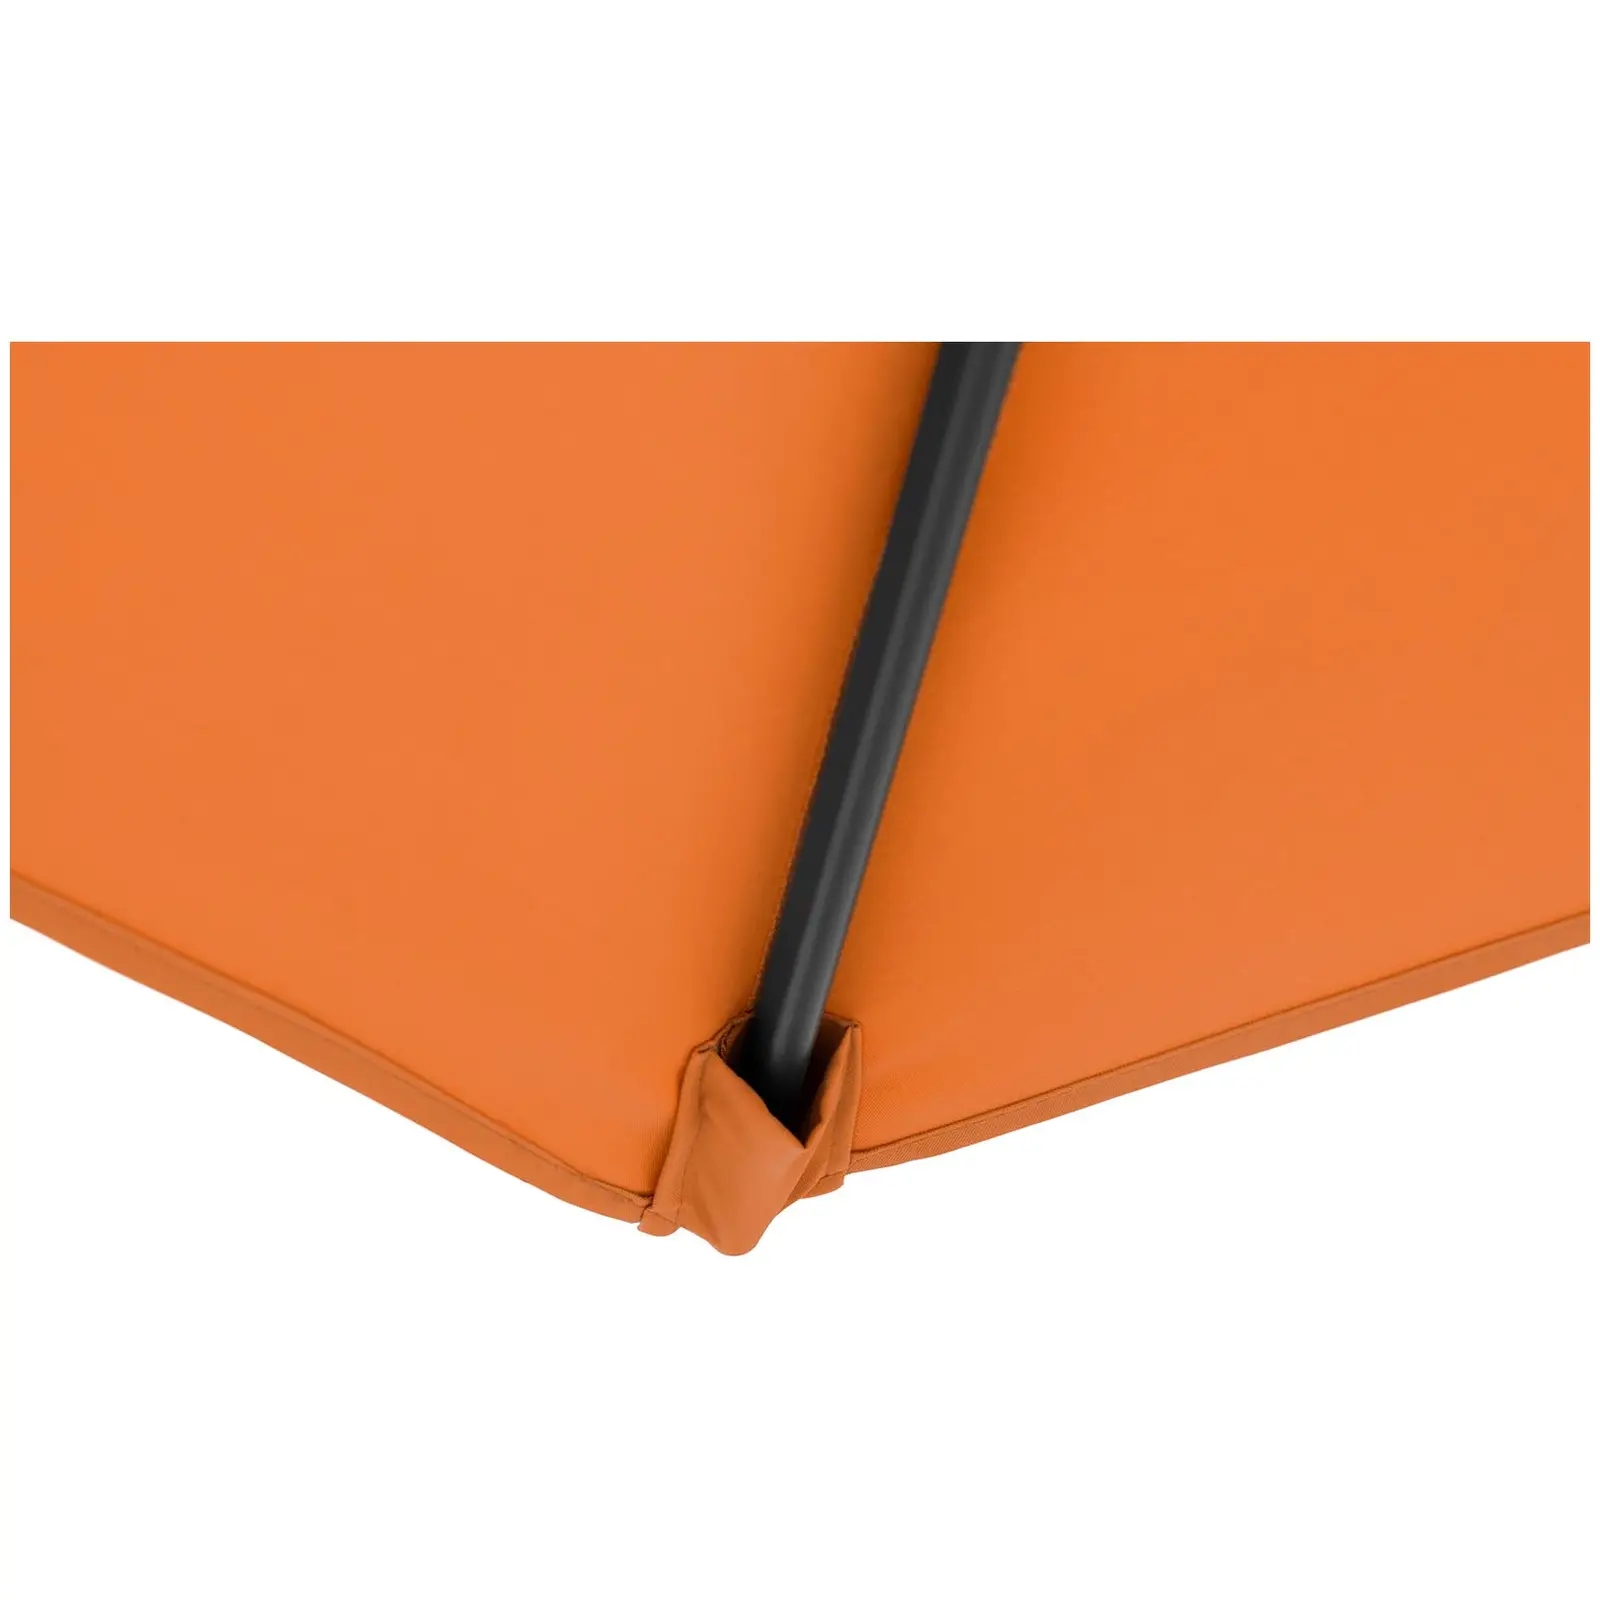 B-zboží Boční slunečník - oranžový - kulatý - Ø 300 cm - naklápěcí